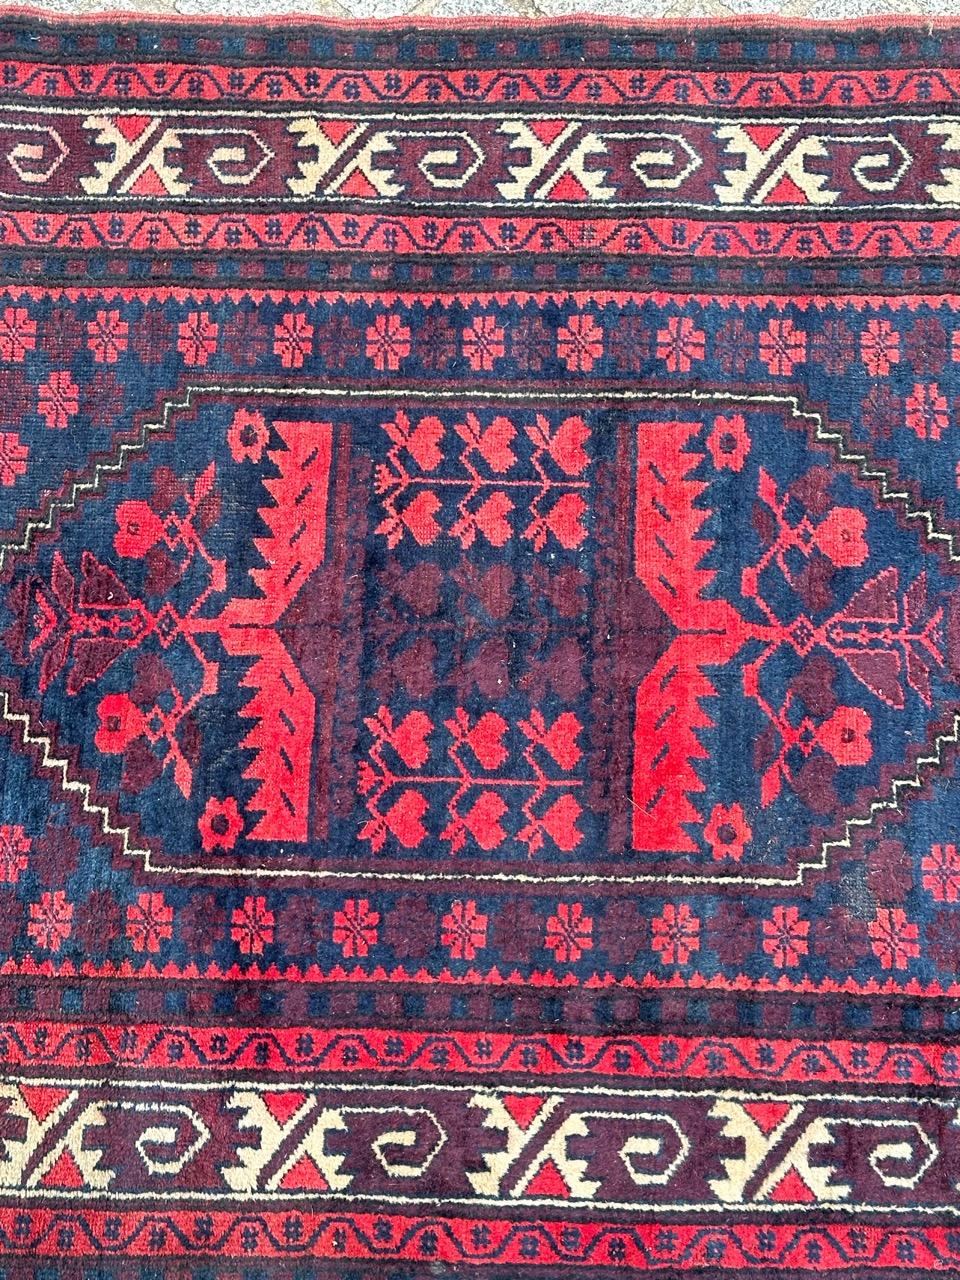 Joli tapis turc du milieu du siècle avec de beaux motifs géométriques et de belles couleurs avec du rouge, du violet et du bleu marine, entièrement noué à la main avec de la laine sur une base de laine. Quelques usures dues à l'âge et à